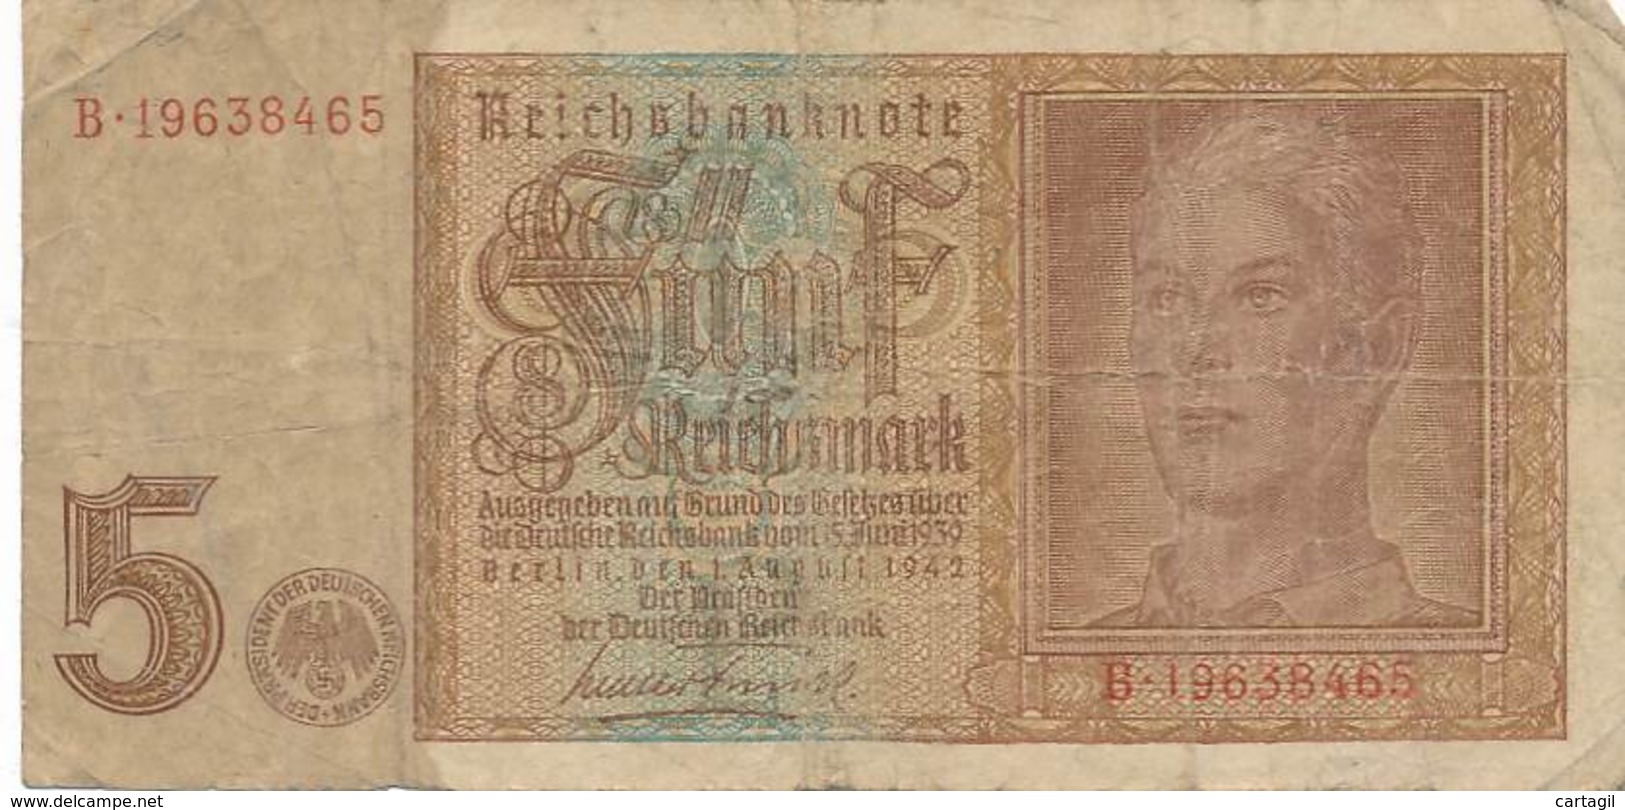 Numismatique -B3729 -Allemagne 5 Reichsmark 1942 ( Catégorie,  Nature,  état ... Scans)-Envoi Gratuit - 5 Reichsmark